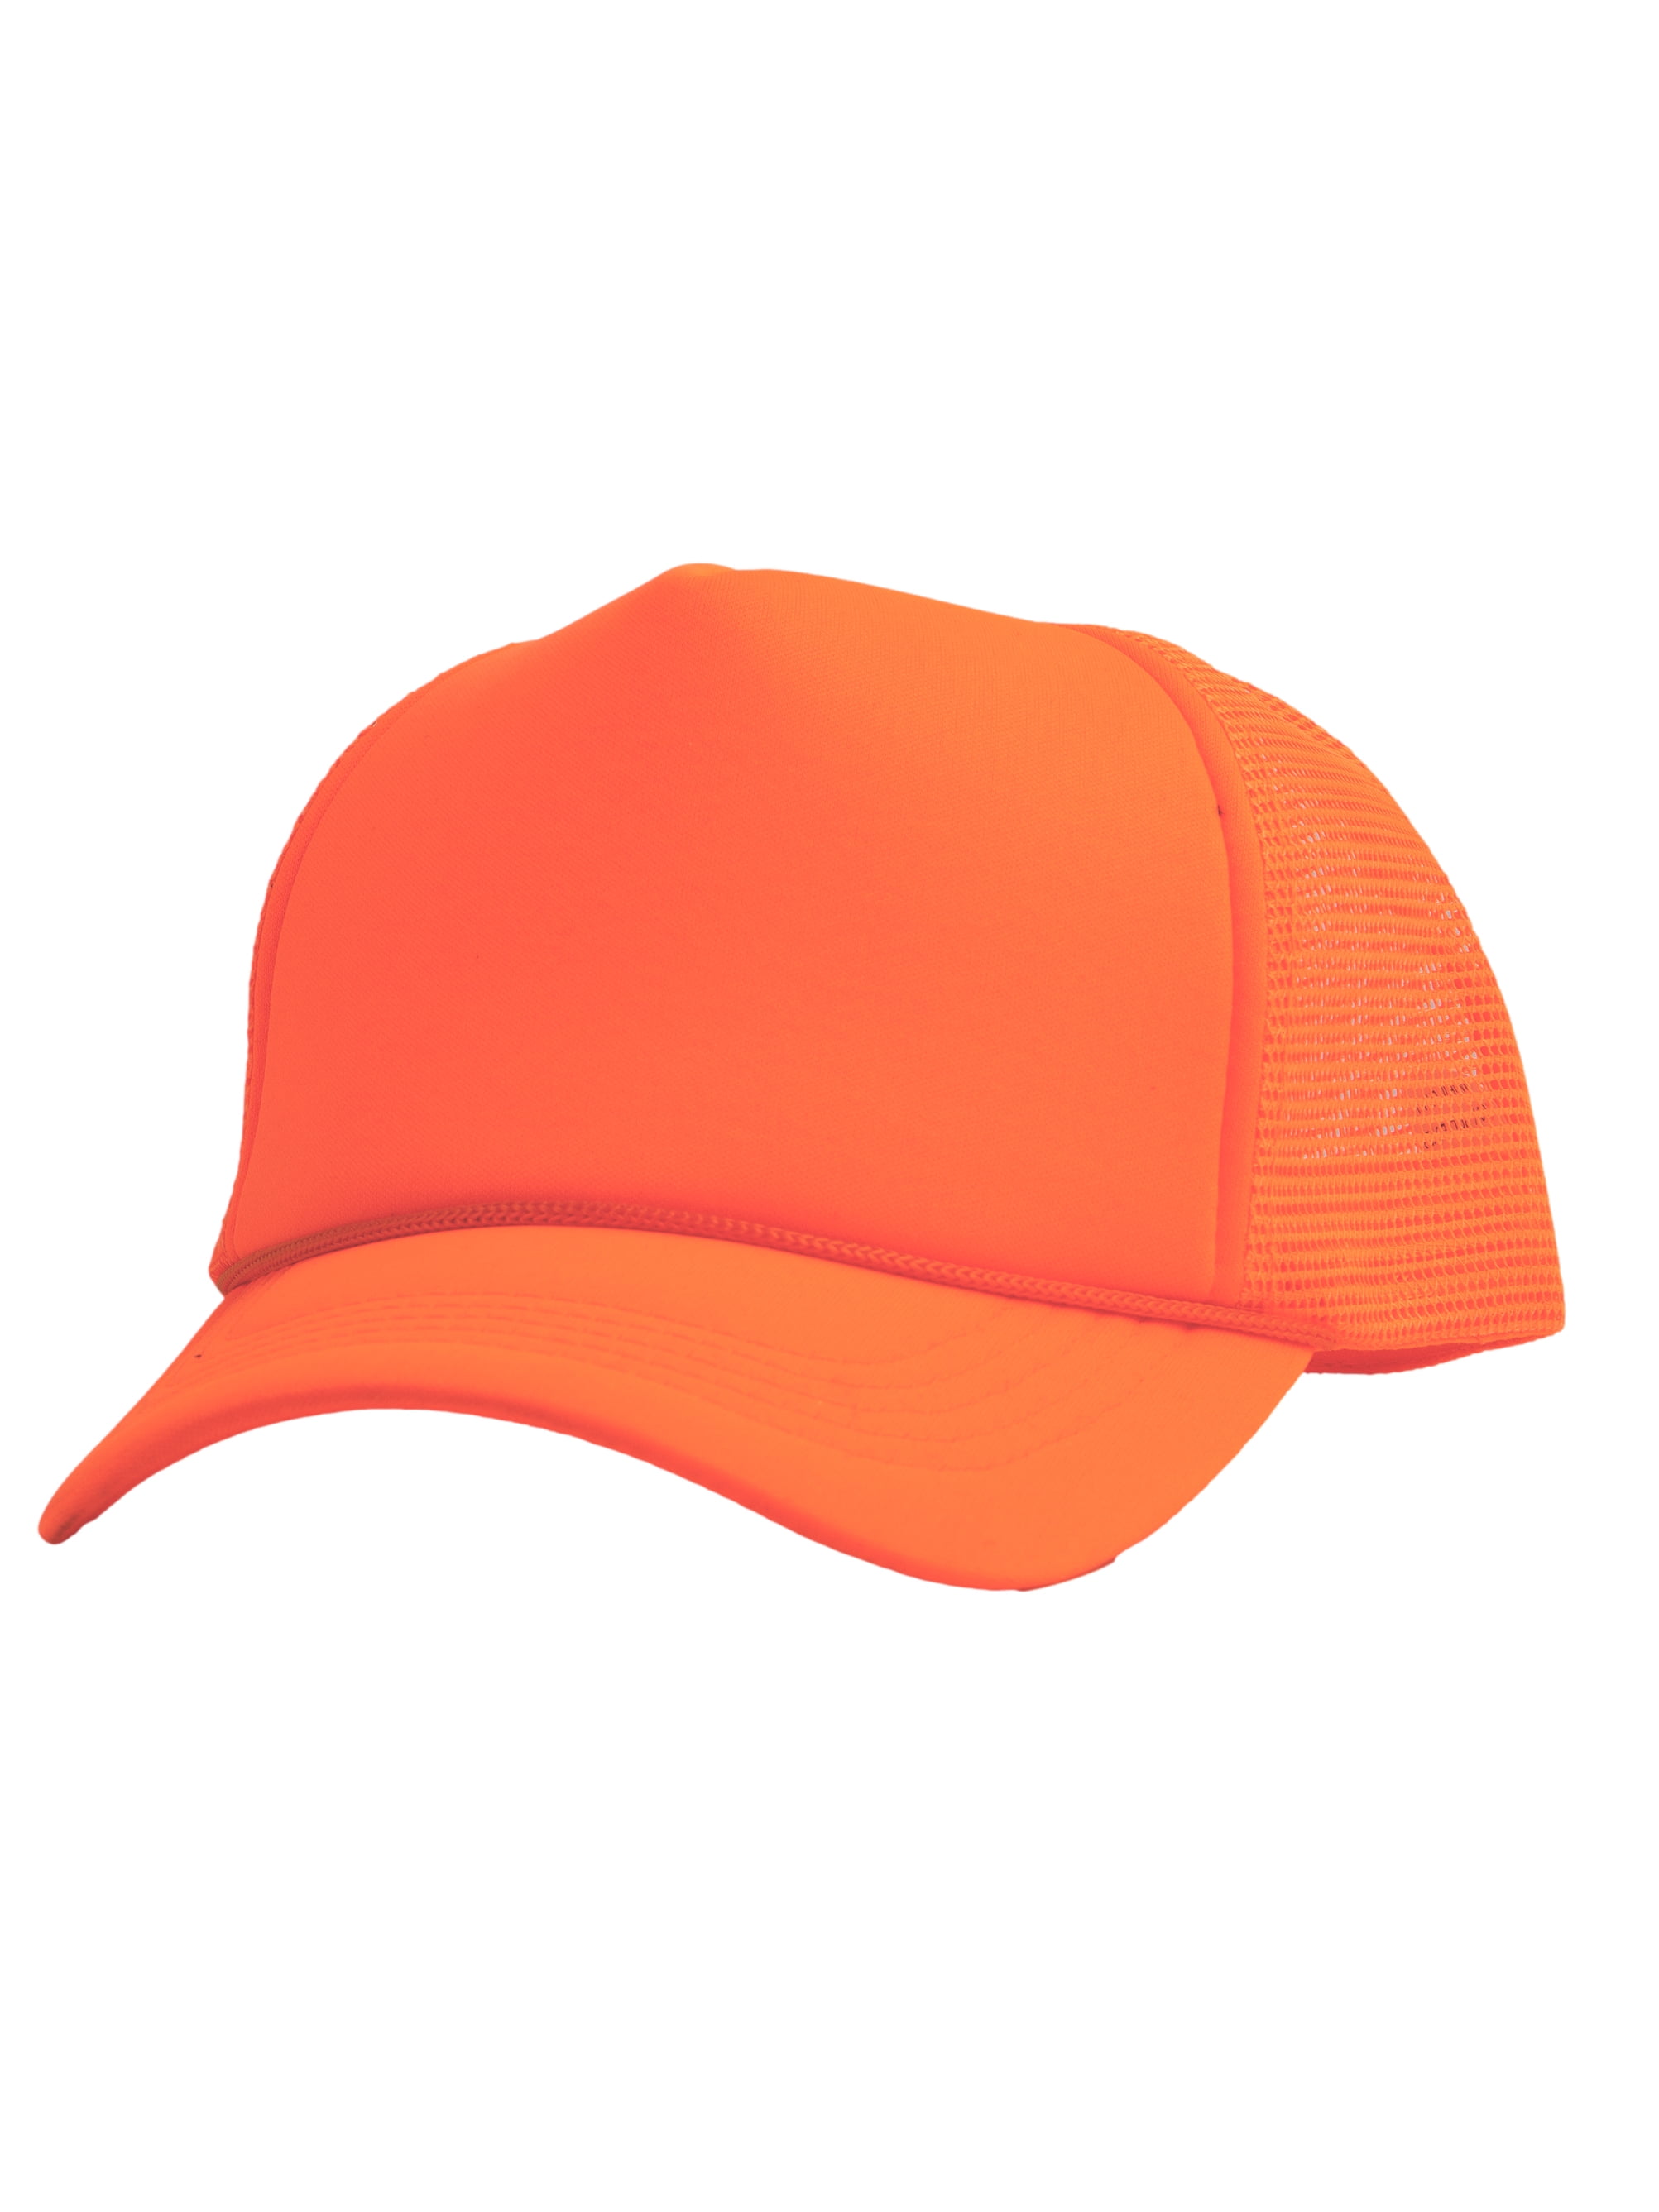 Trucker Neon Foam Trucker Mesh Blank Snapback Top Hats Mens Hat Headwear - Orange